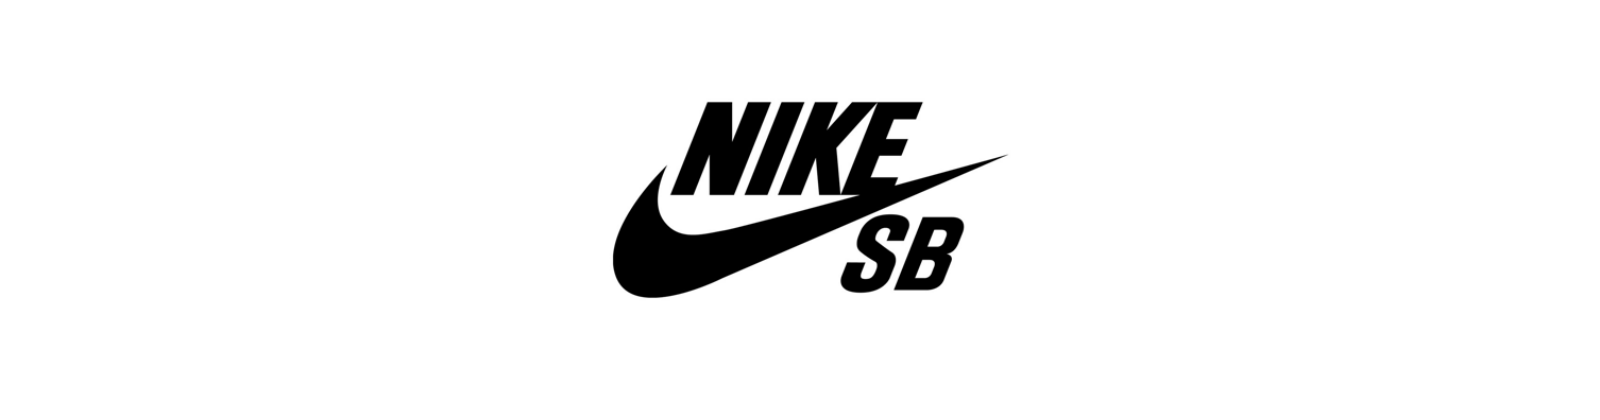 Nike SB Girls Night